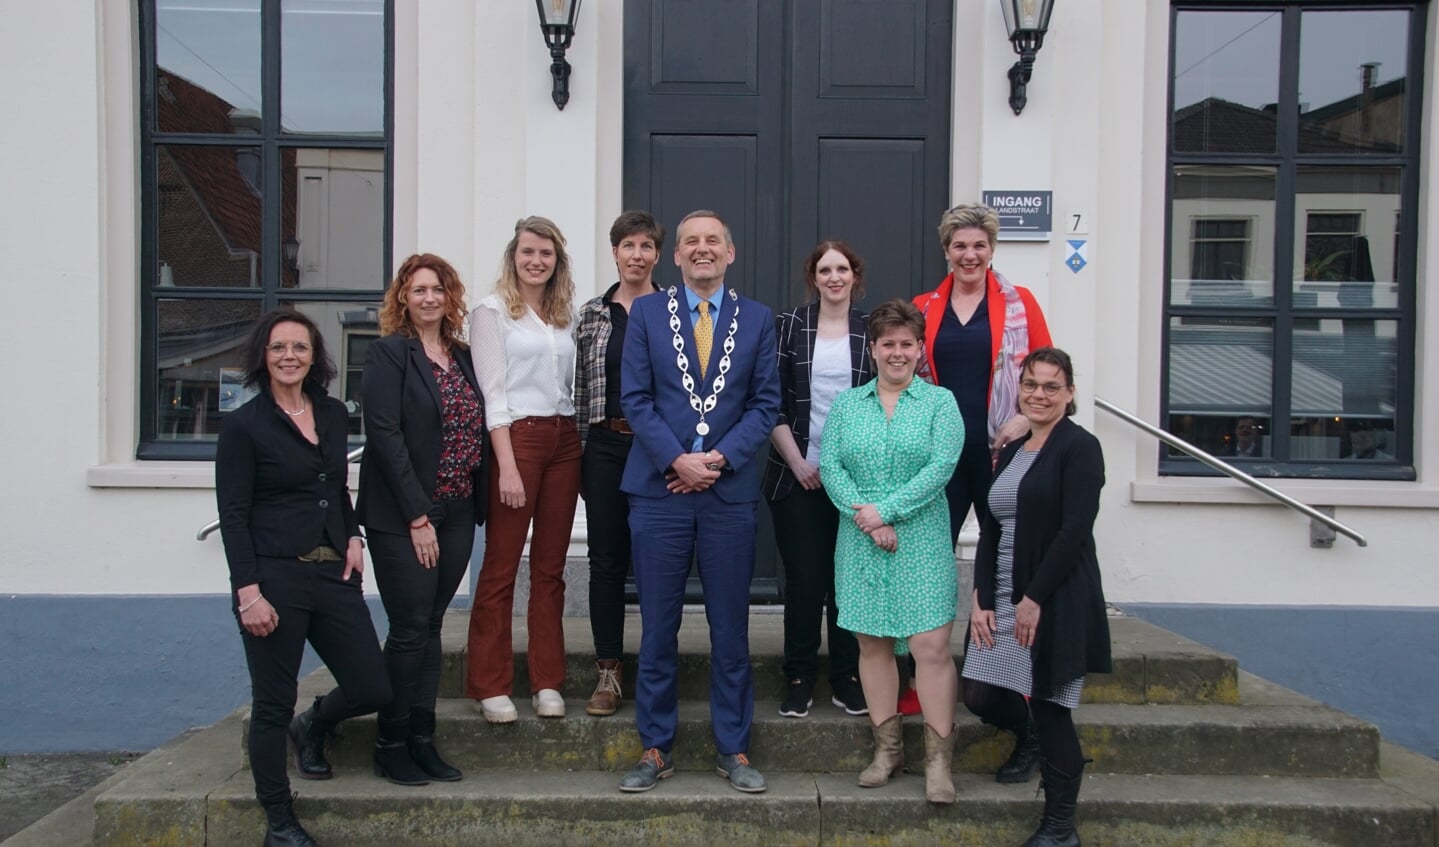 Acht dames in de nieuwe gemeenteraad met de burgemeester. Foto: Frank Vinkenvleugel